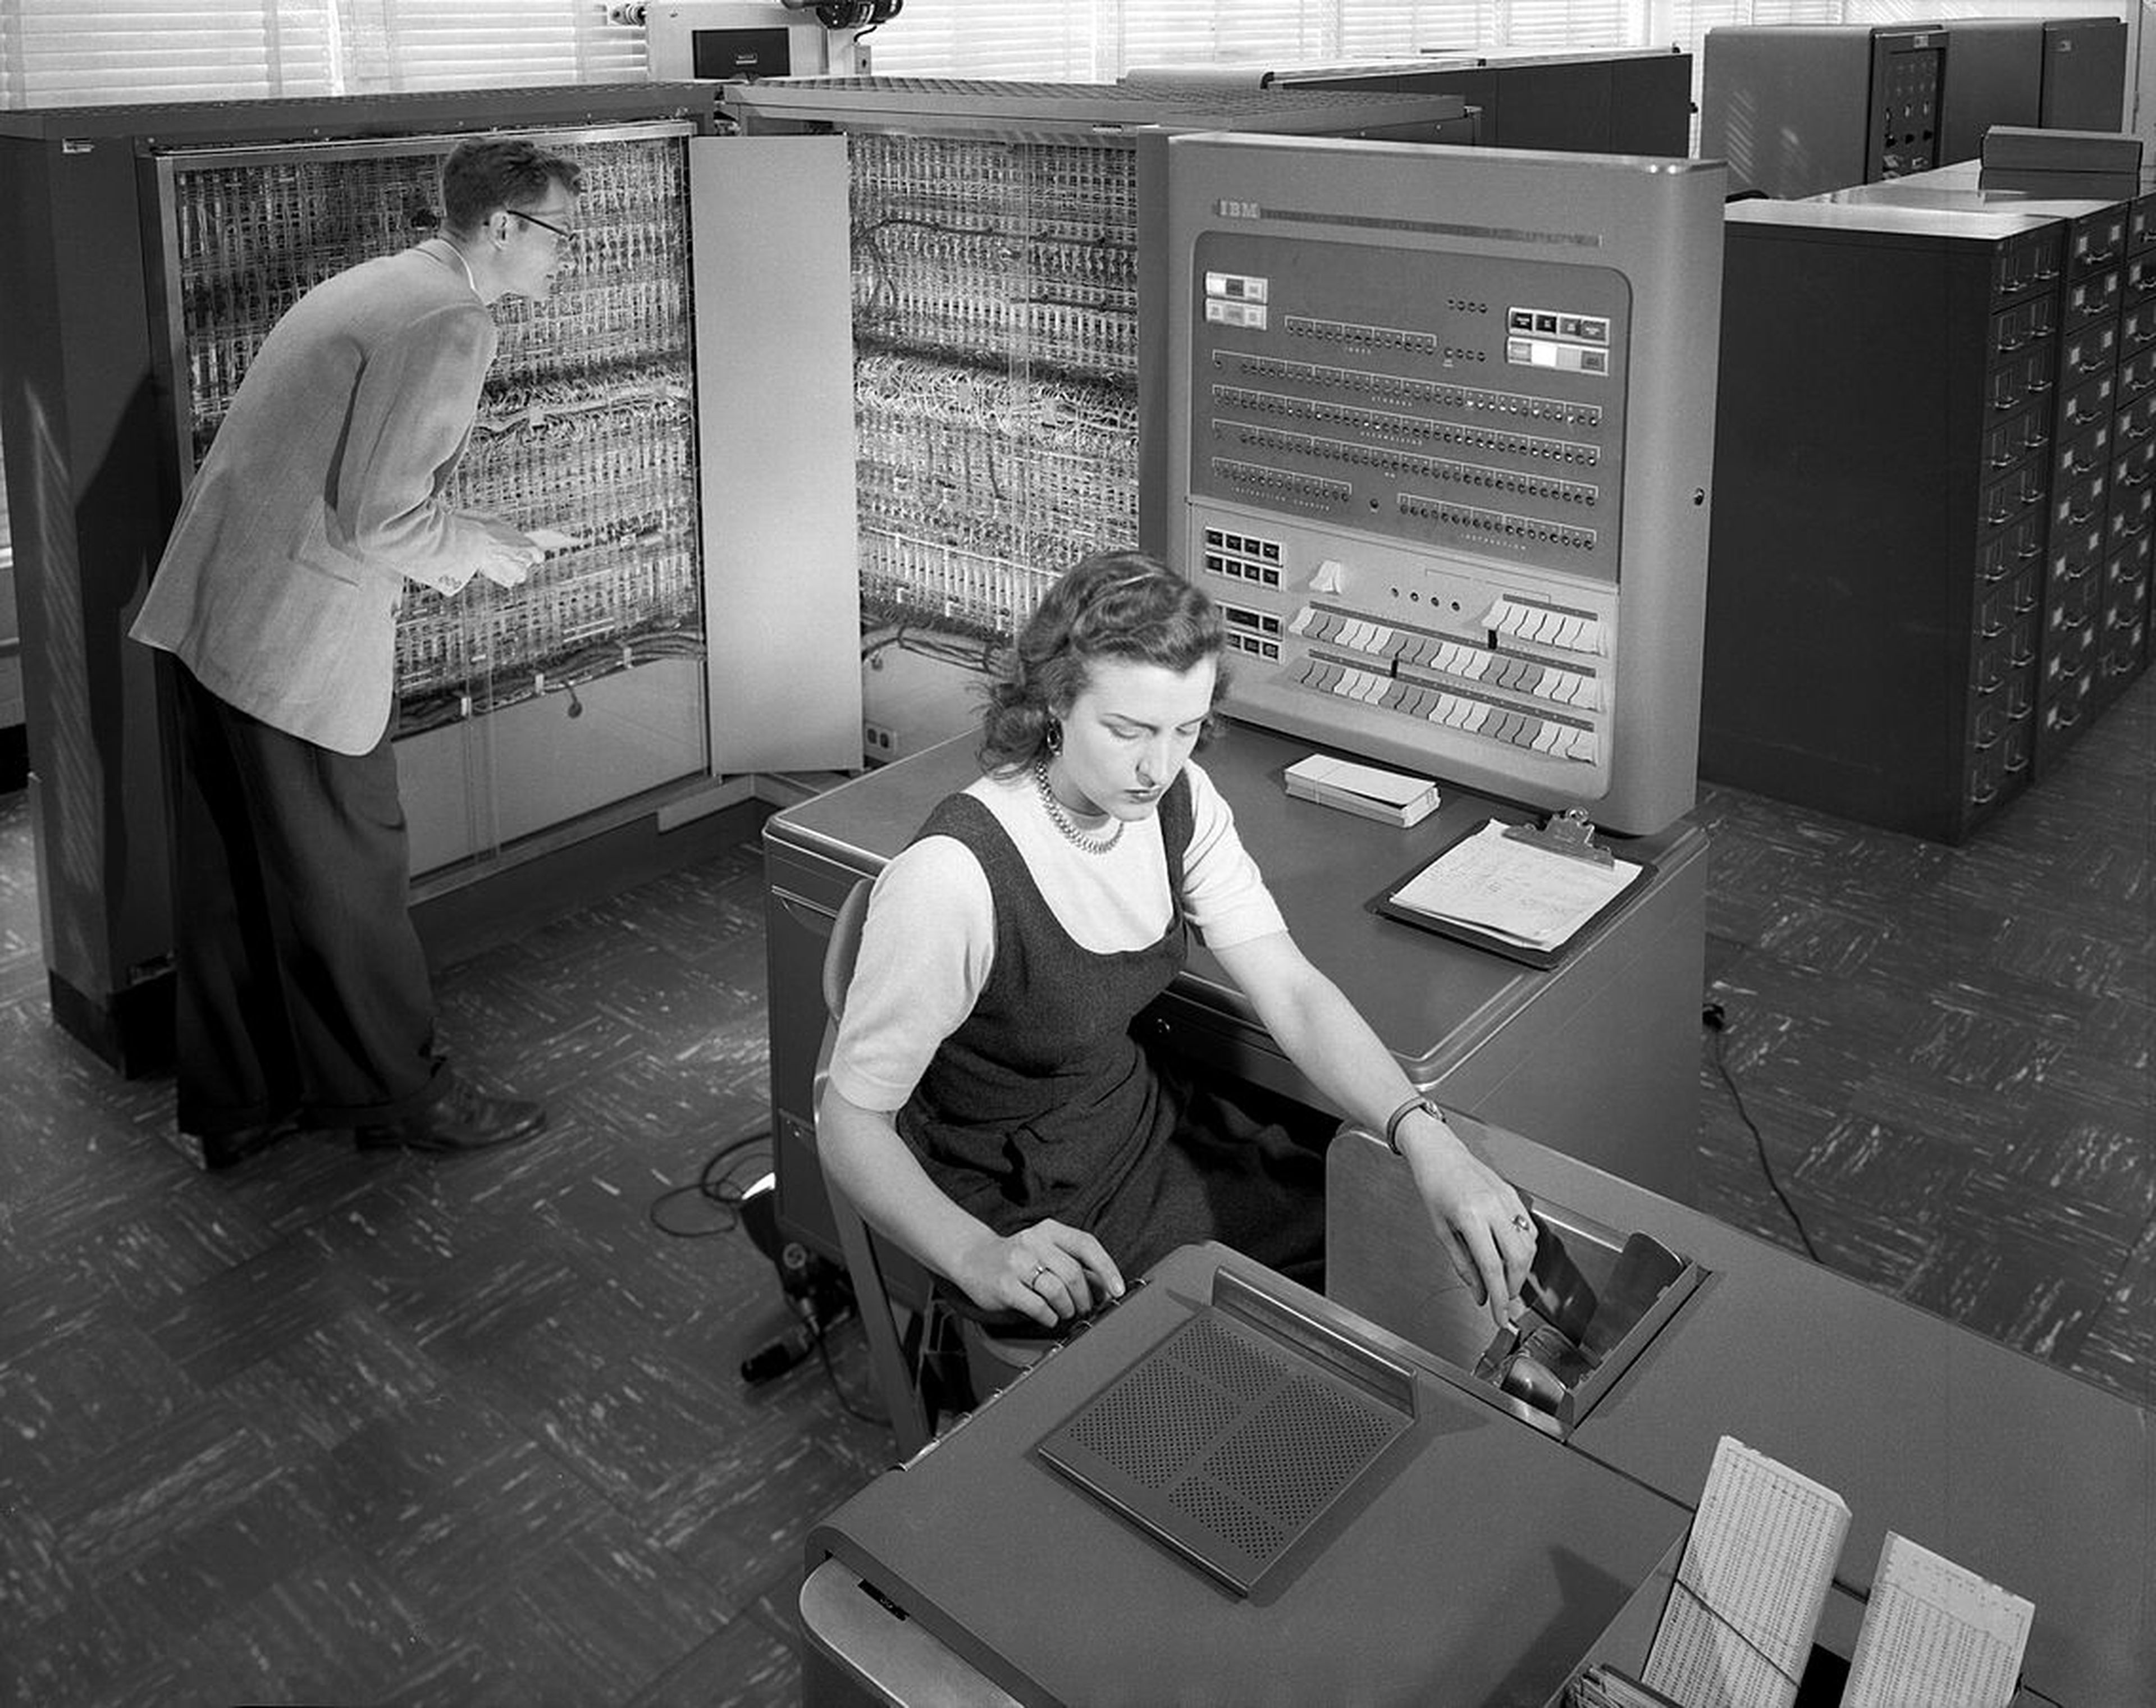 Investigadores del Comité Consejero Nacional para la Aeronáutica (NACA) de EEUU utilizando una máquina de escribir de IBM en 1957.